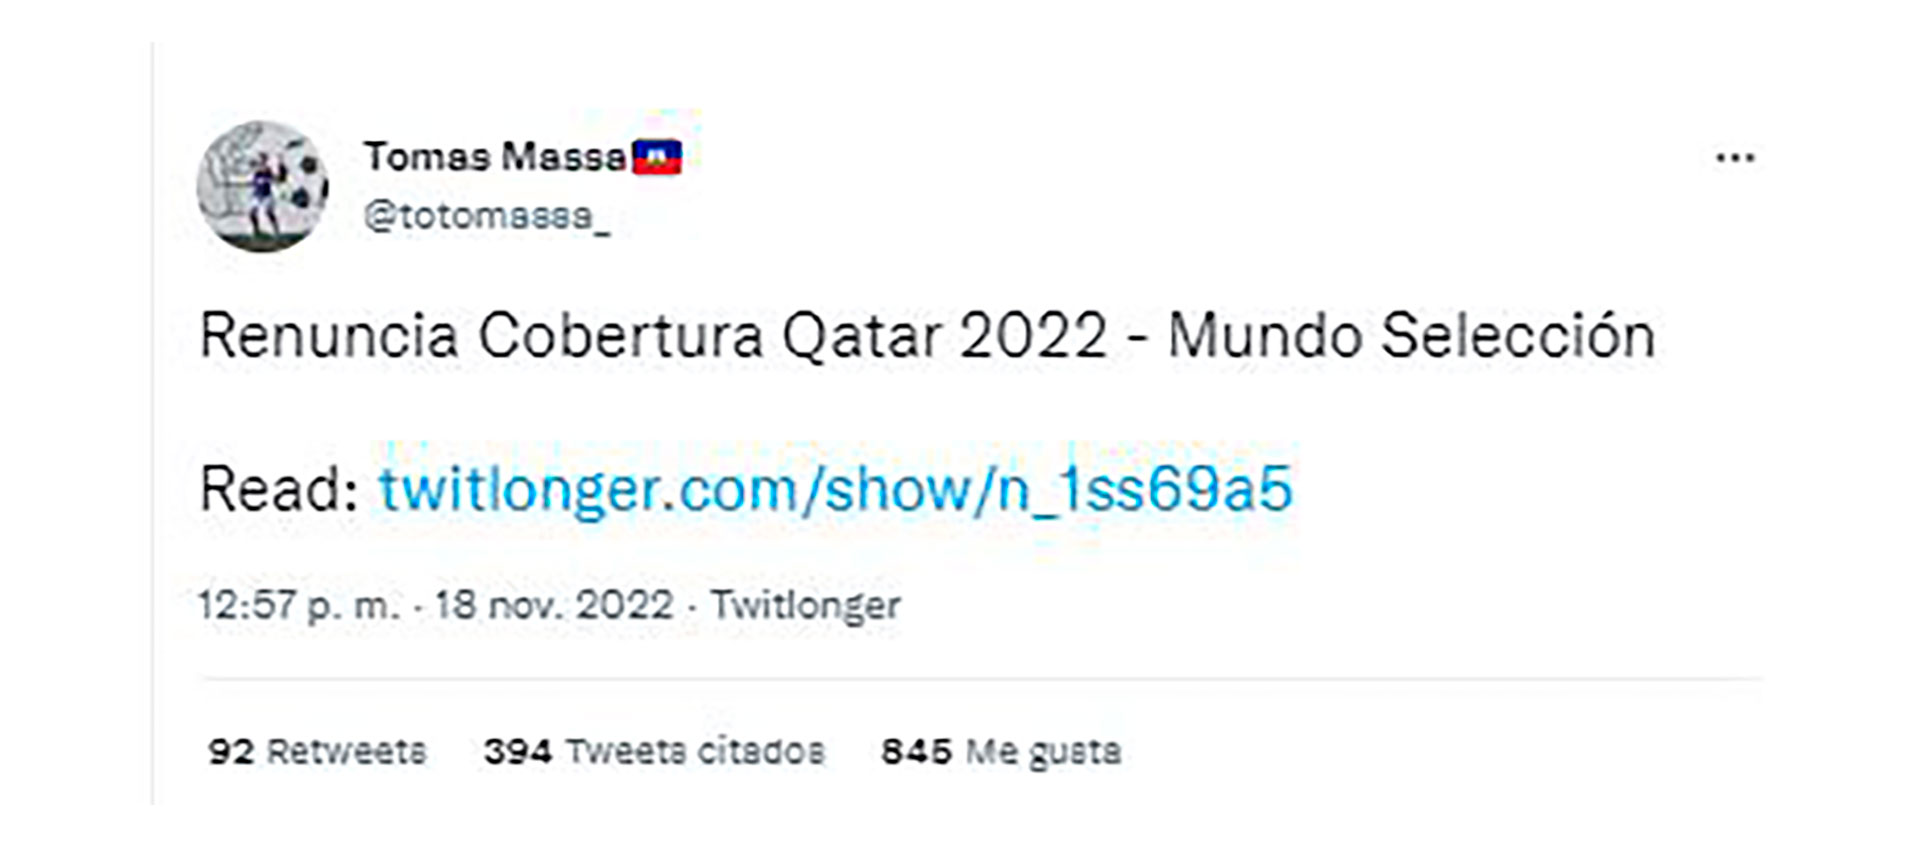 El tuit donde Tomás Massa anunció su renuncia